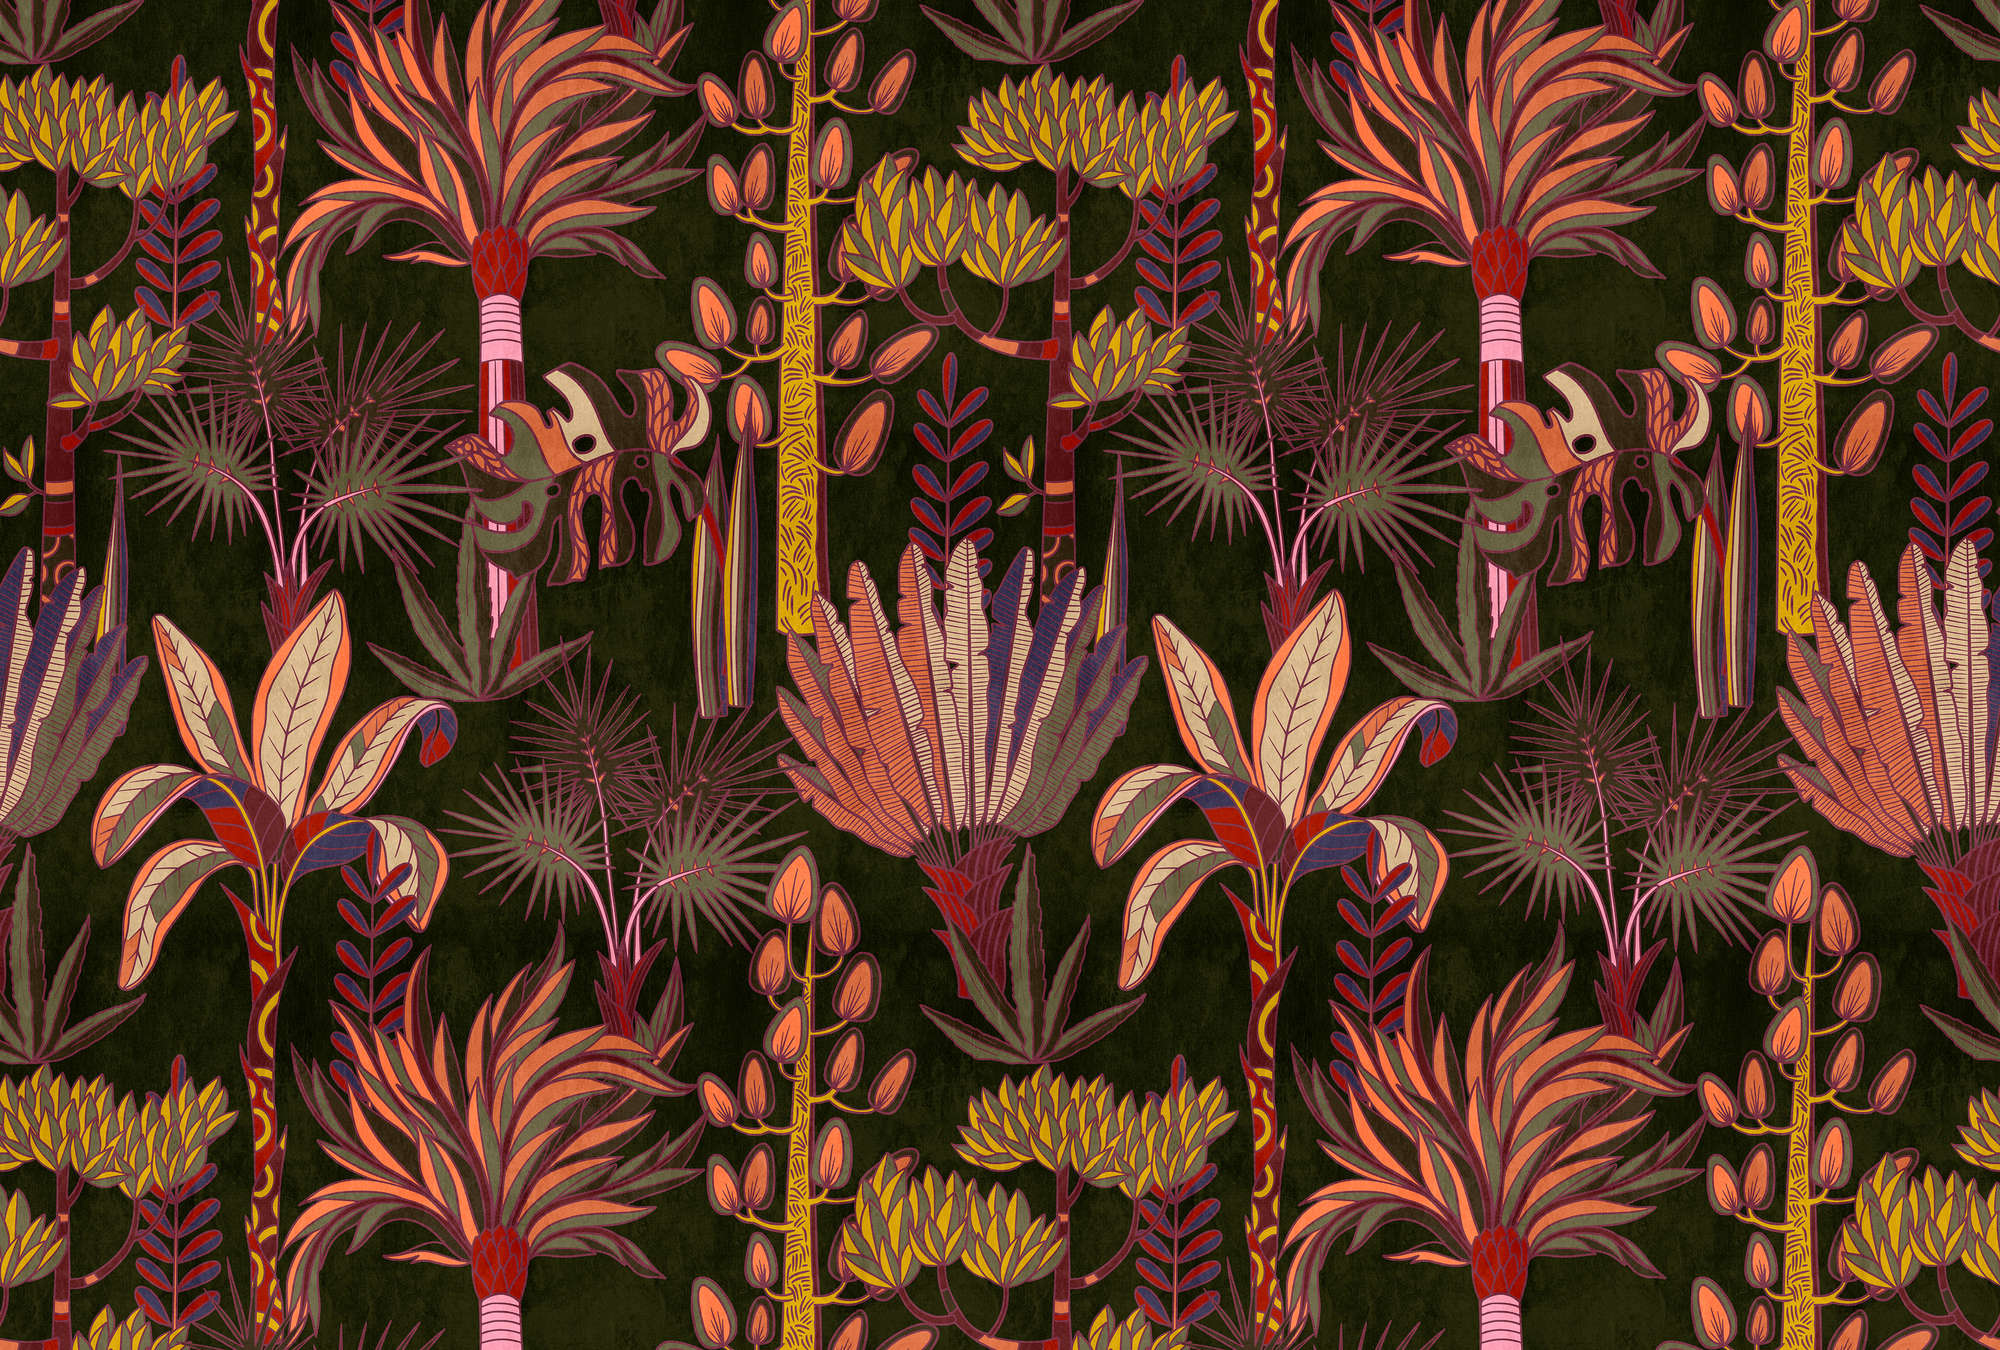             Lagos 1 - palmboom muurschildering kleurrijke grafische stijl in textiellook
        